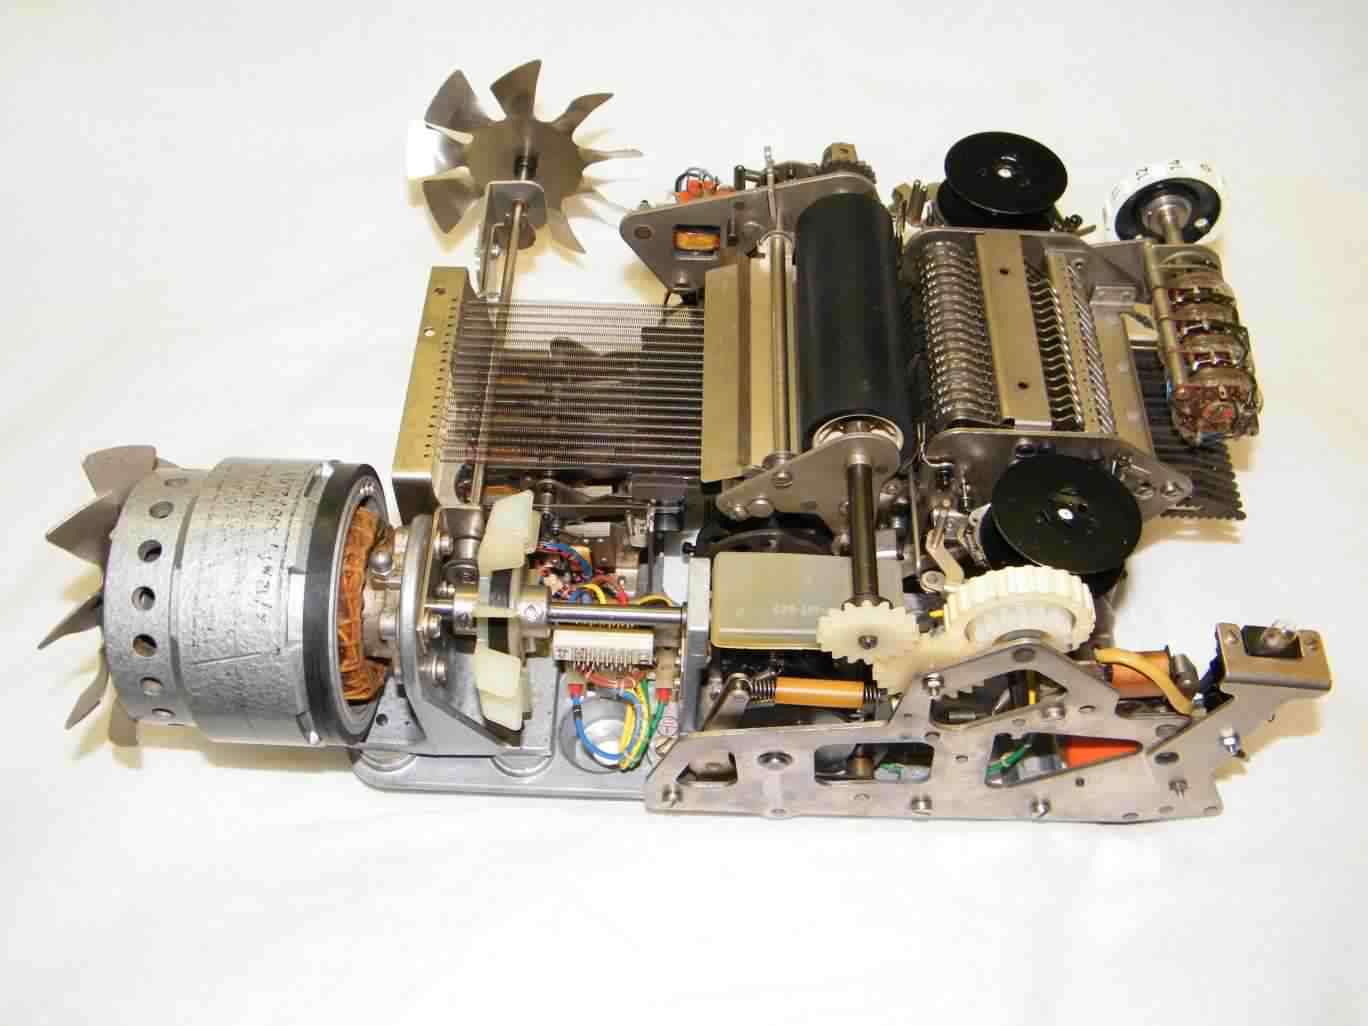 Printer mechanism front after restoration, click image for a larger version